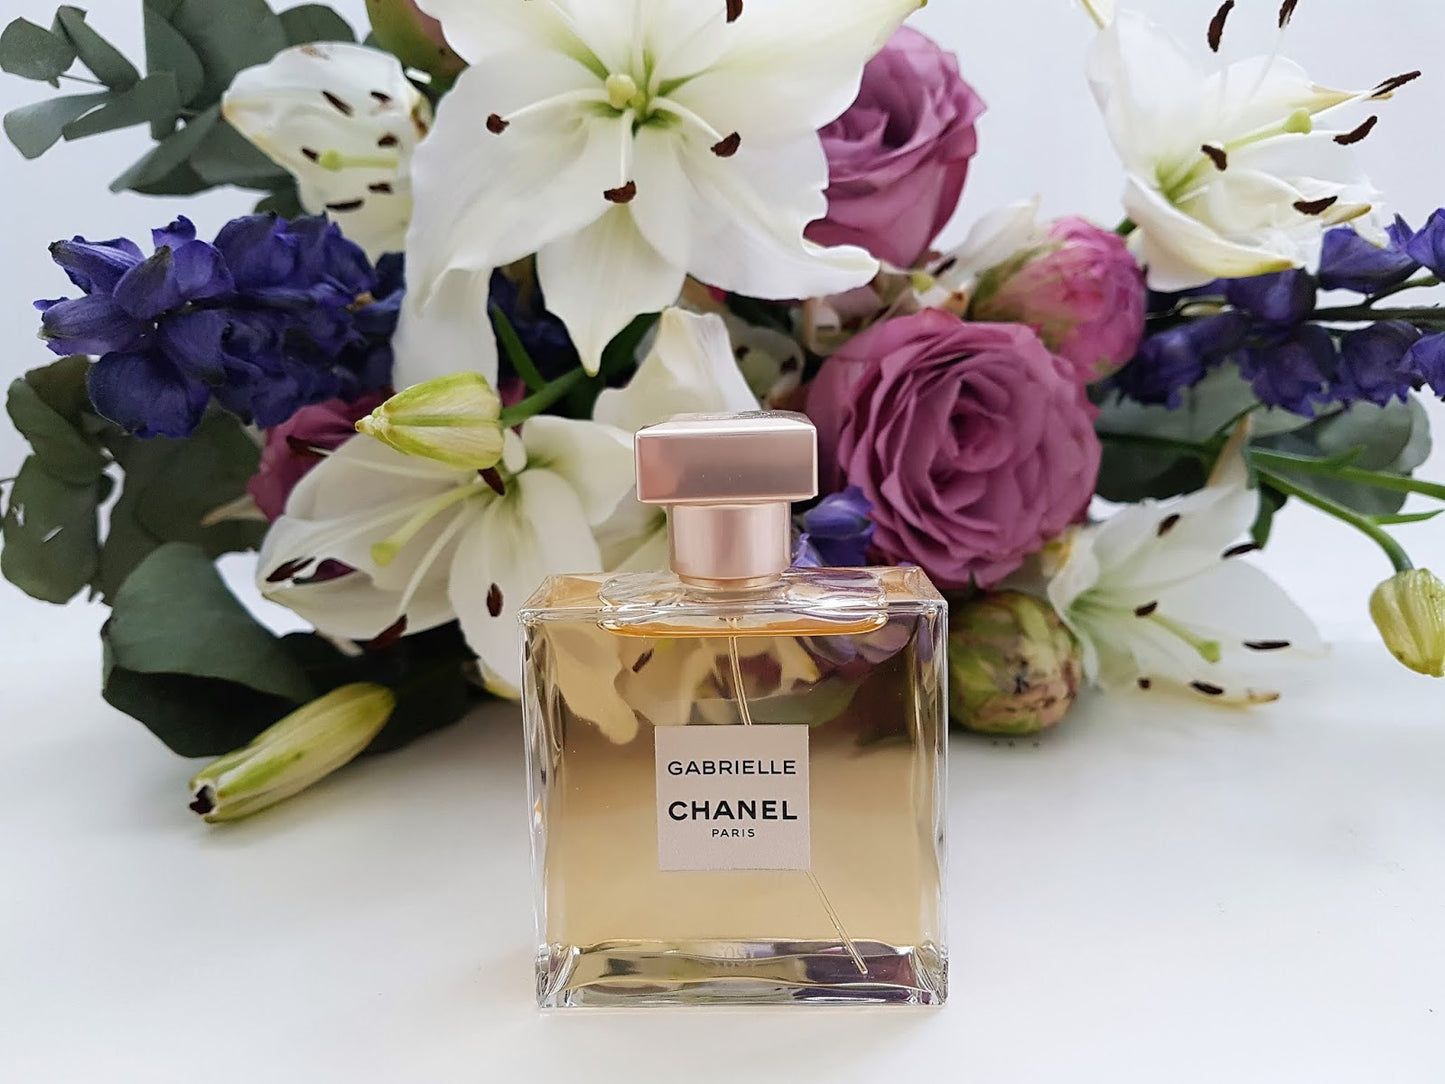 GABRIELLE CHANEL Eau de Parfum - CHANEL